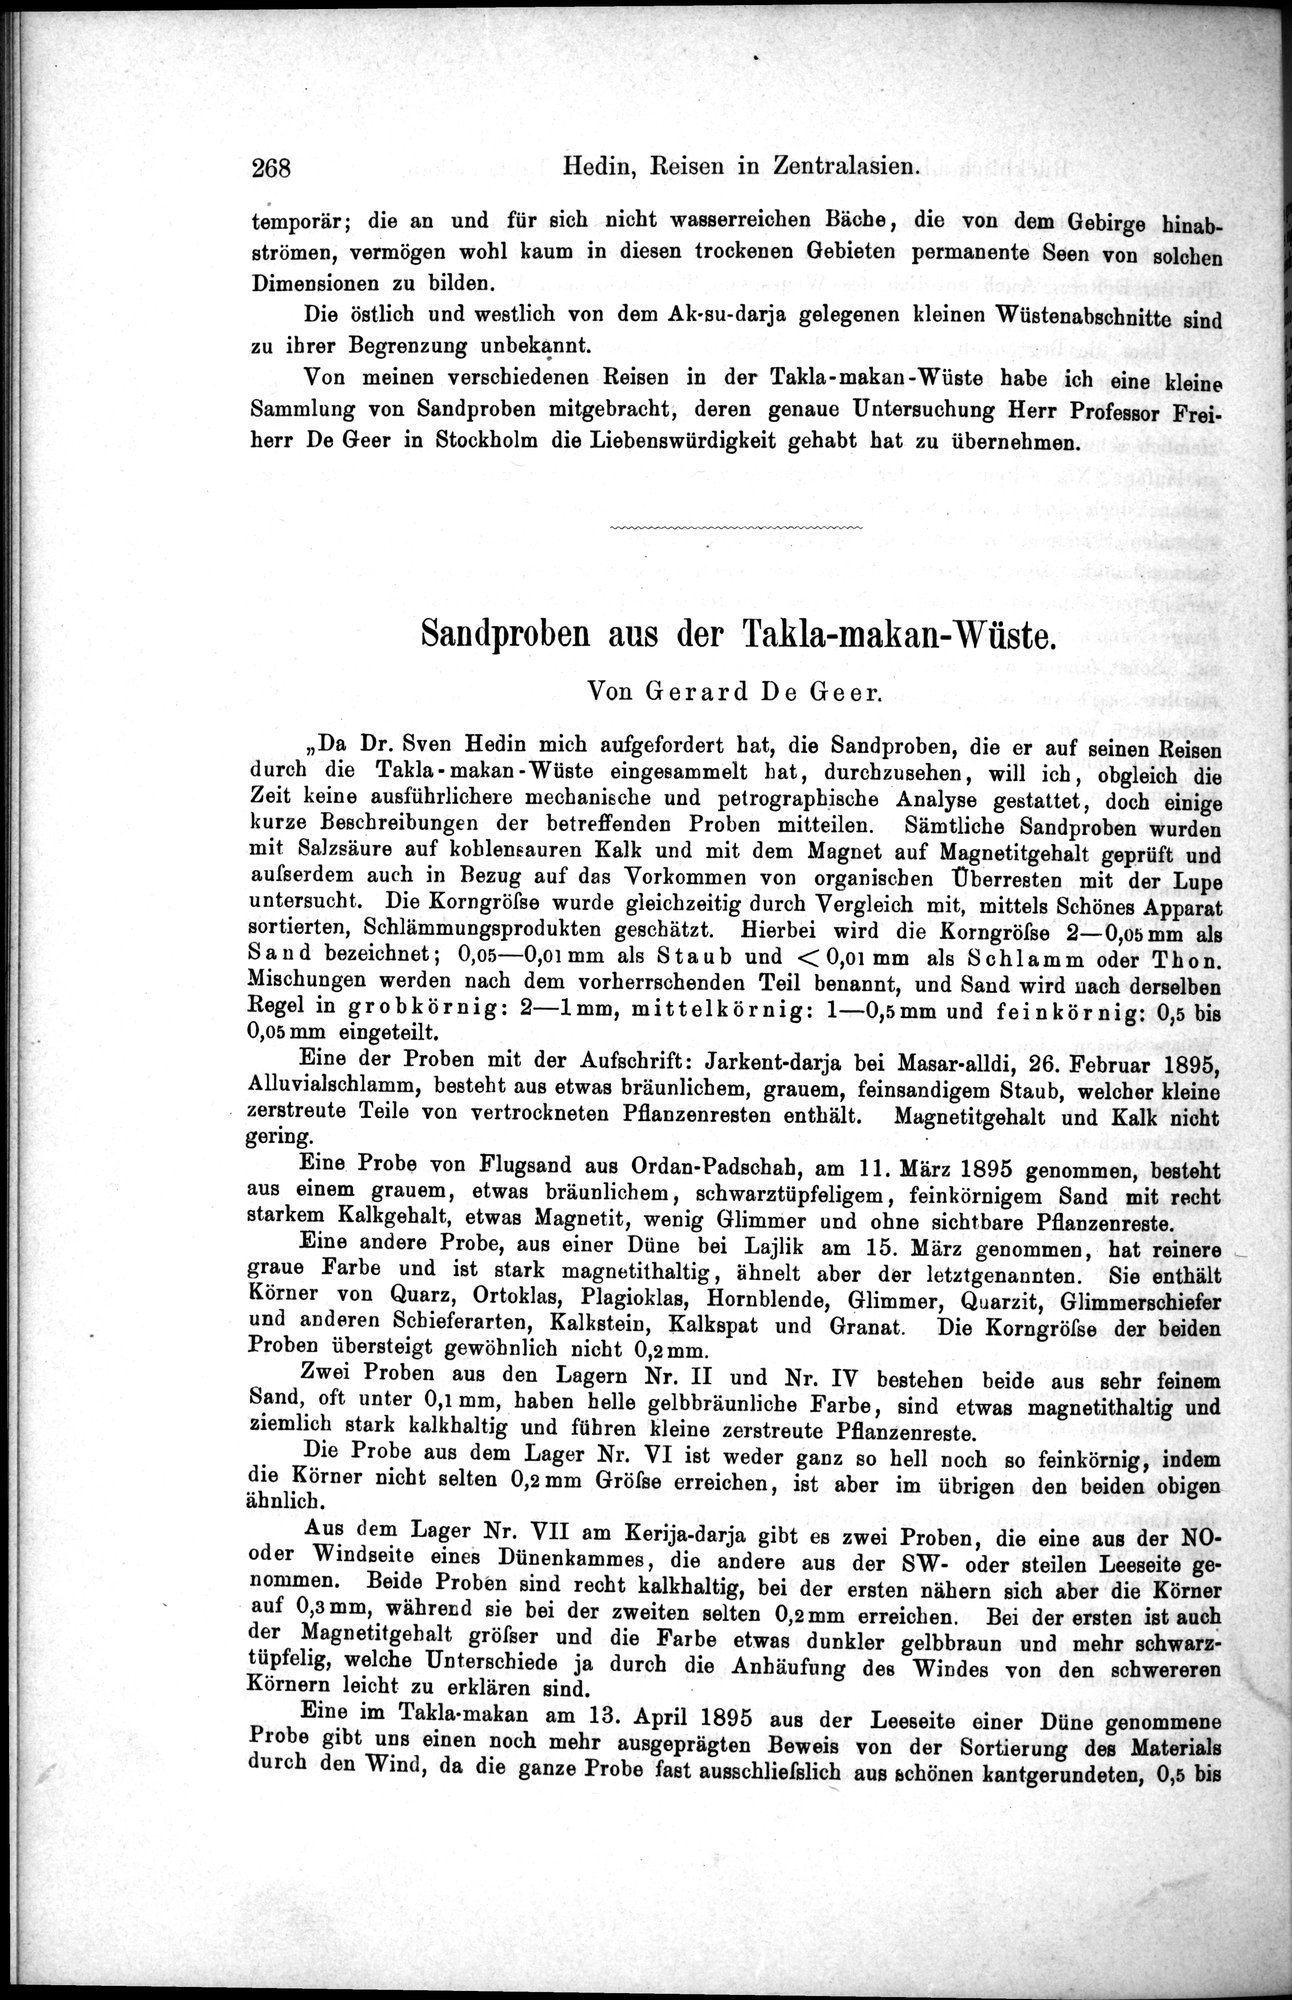 Die Geographische-Wissenschaftlichen Ergebnisse meiner Reisen in Zentralasien, 1894-1897 : vol.1 / Page 280 (Grayscale High Resolution Image)